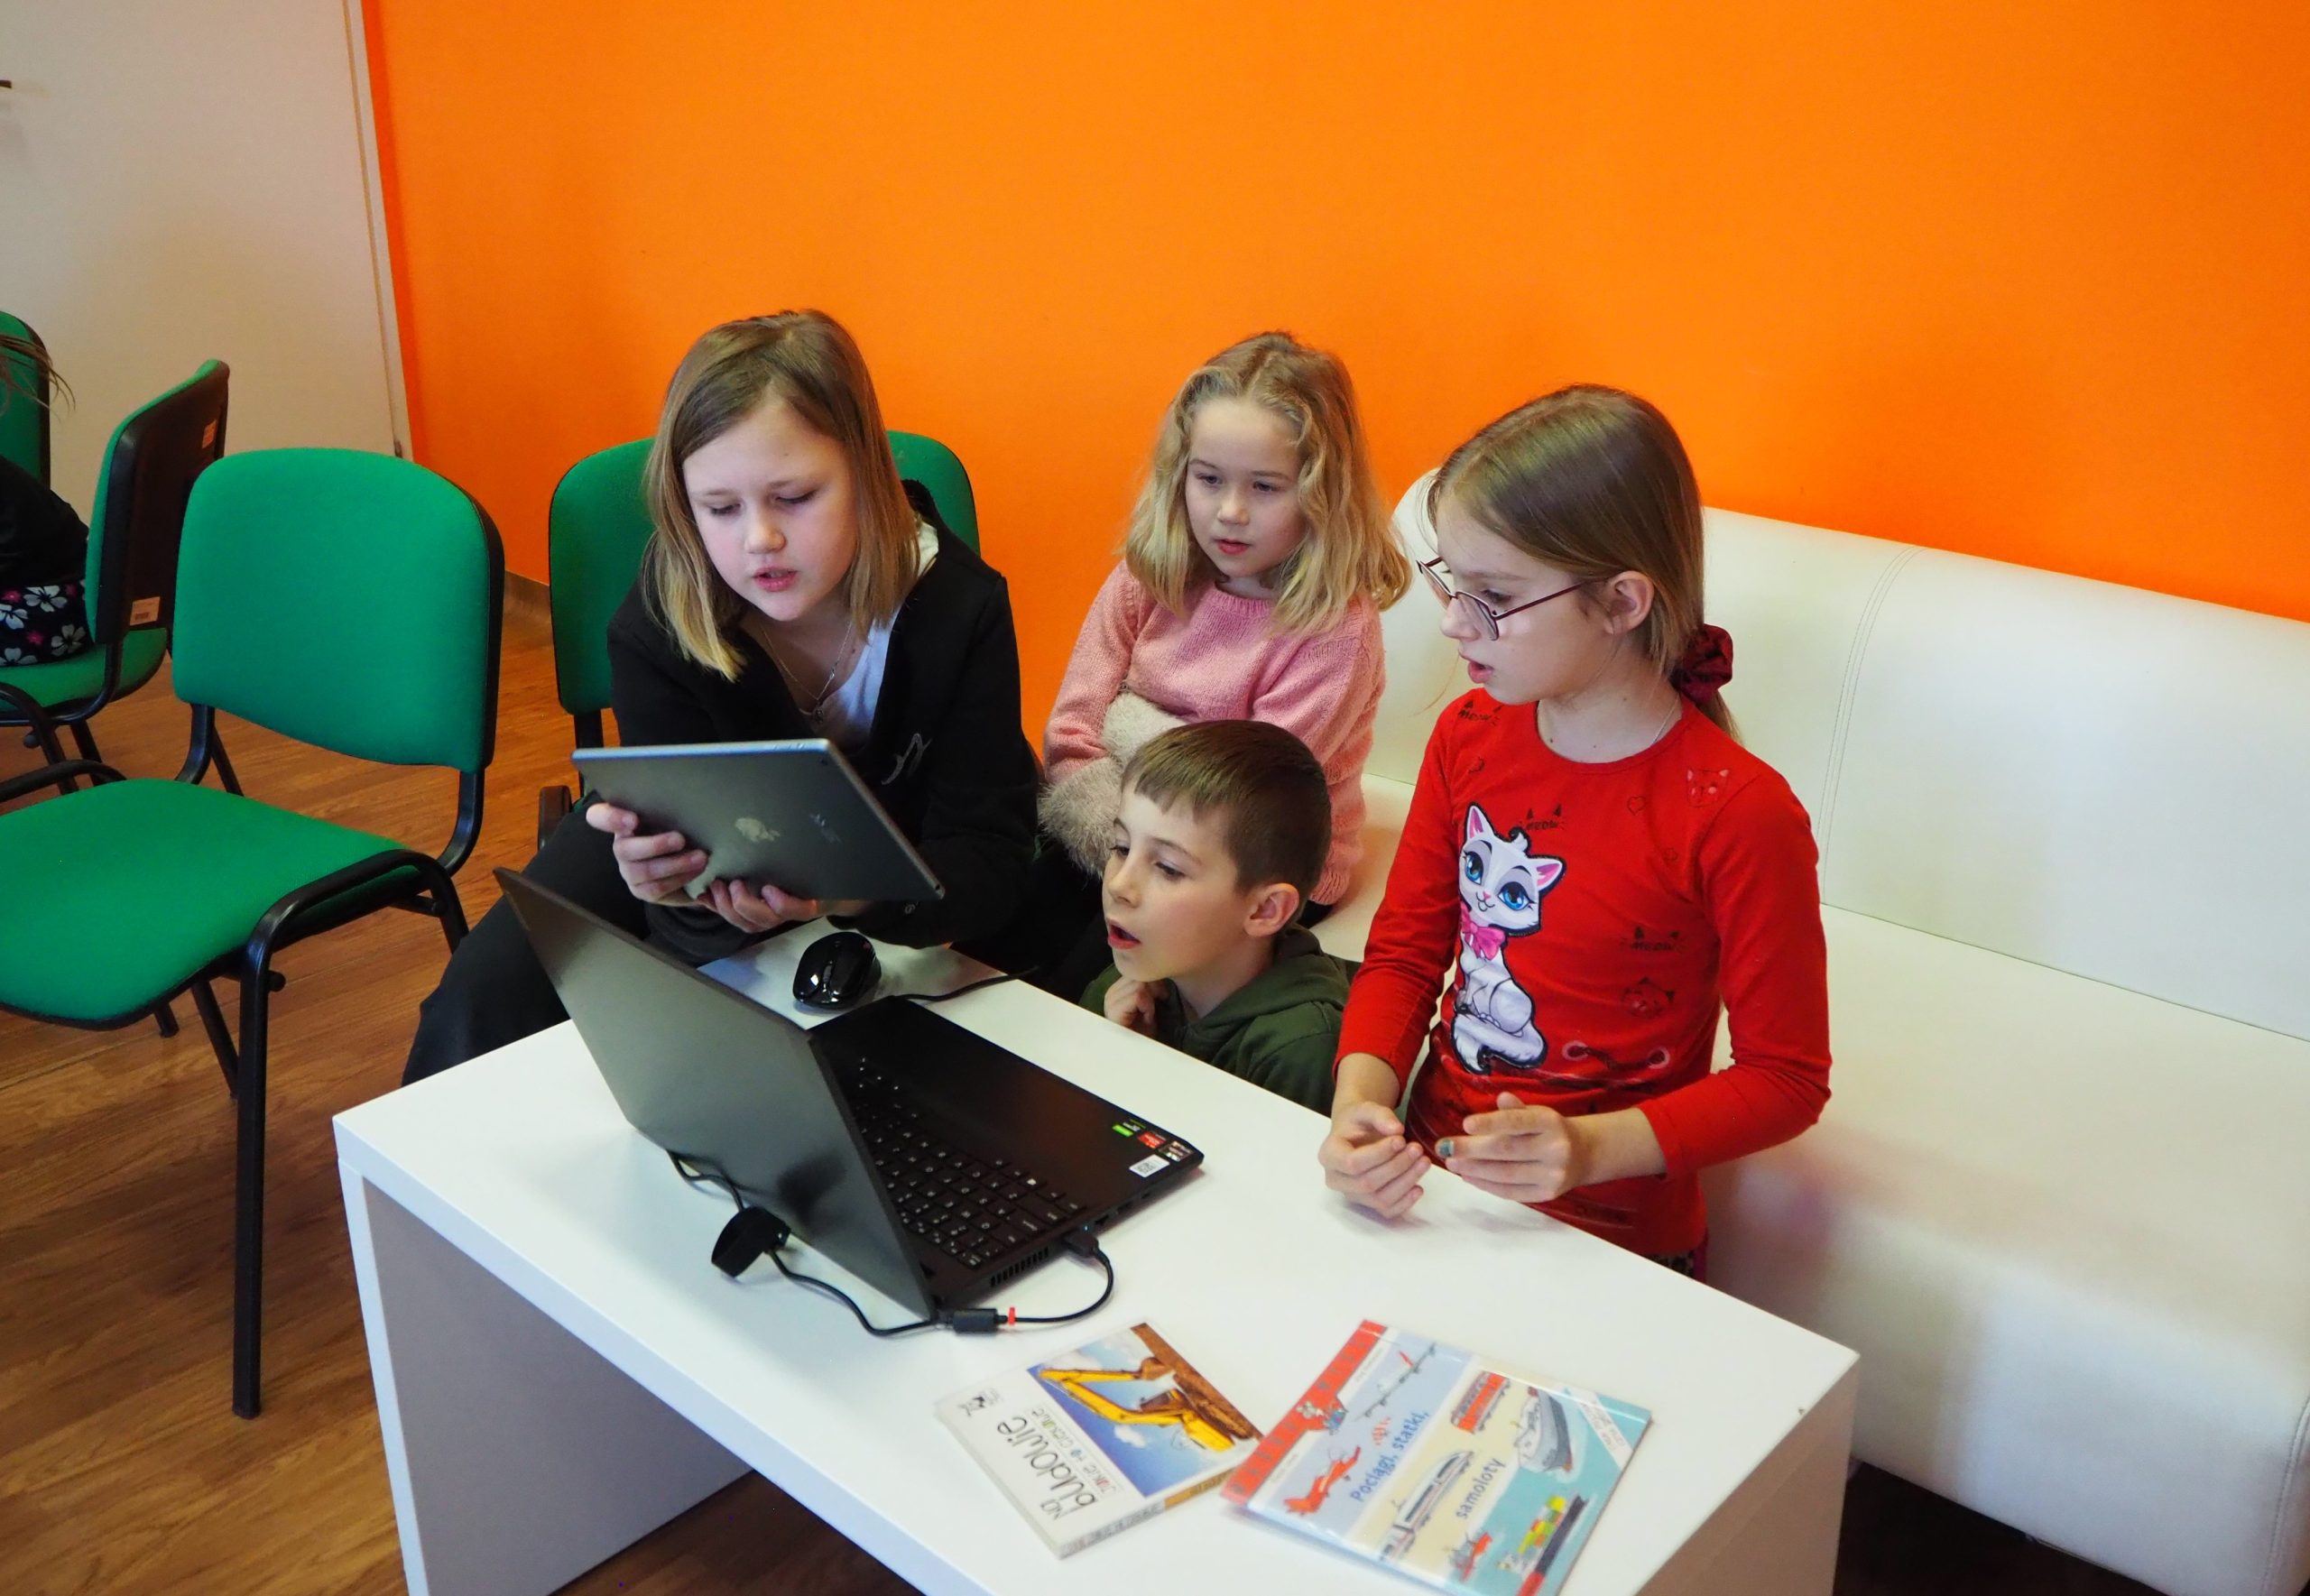 czwórka dzieci na tle pomarańczowej ściany korzyta a laptopa jedna z dziewczynek trzyma tablet